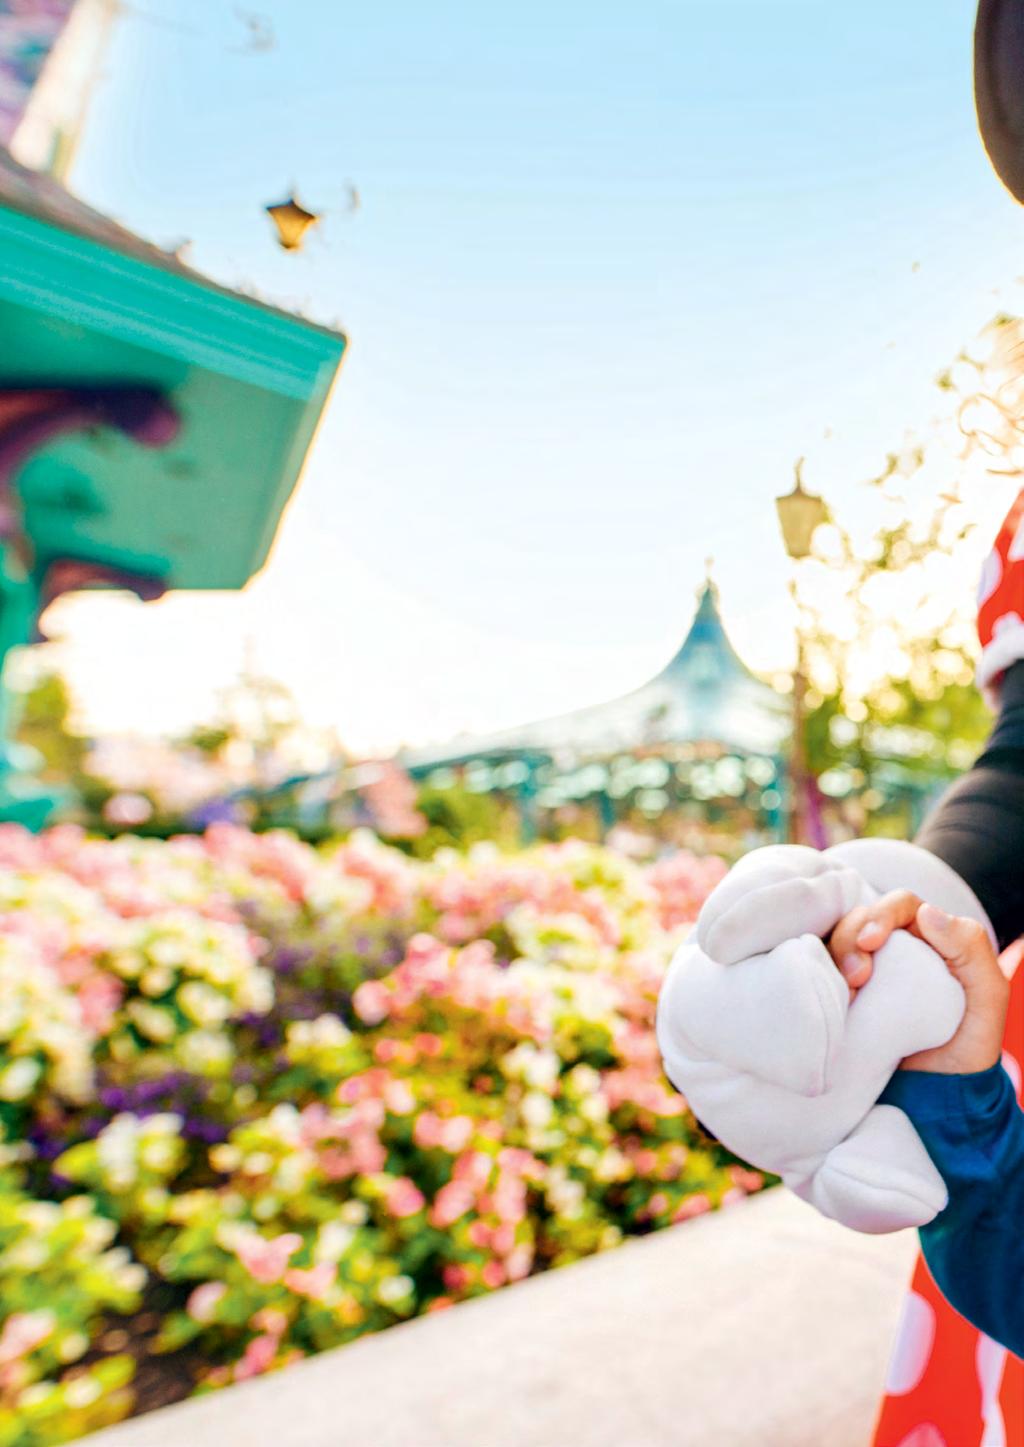 PARQUE DISNEYLAND Os sonhos tornam-se realidade no Parque Disneyland, onde os contos de fadas ganham vida em cinco terras mágicas.